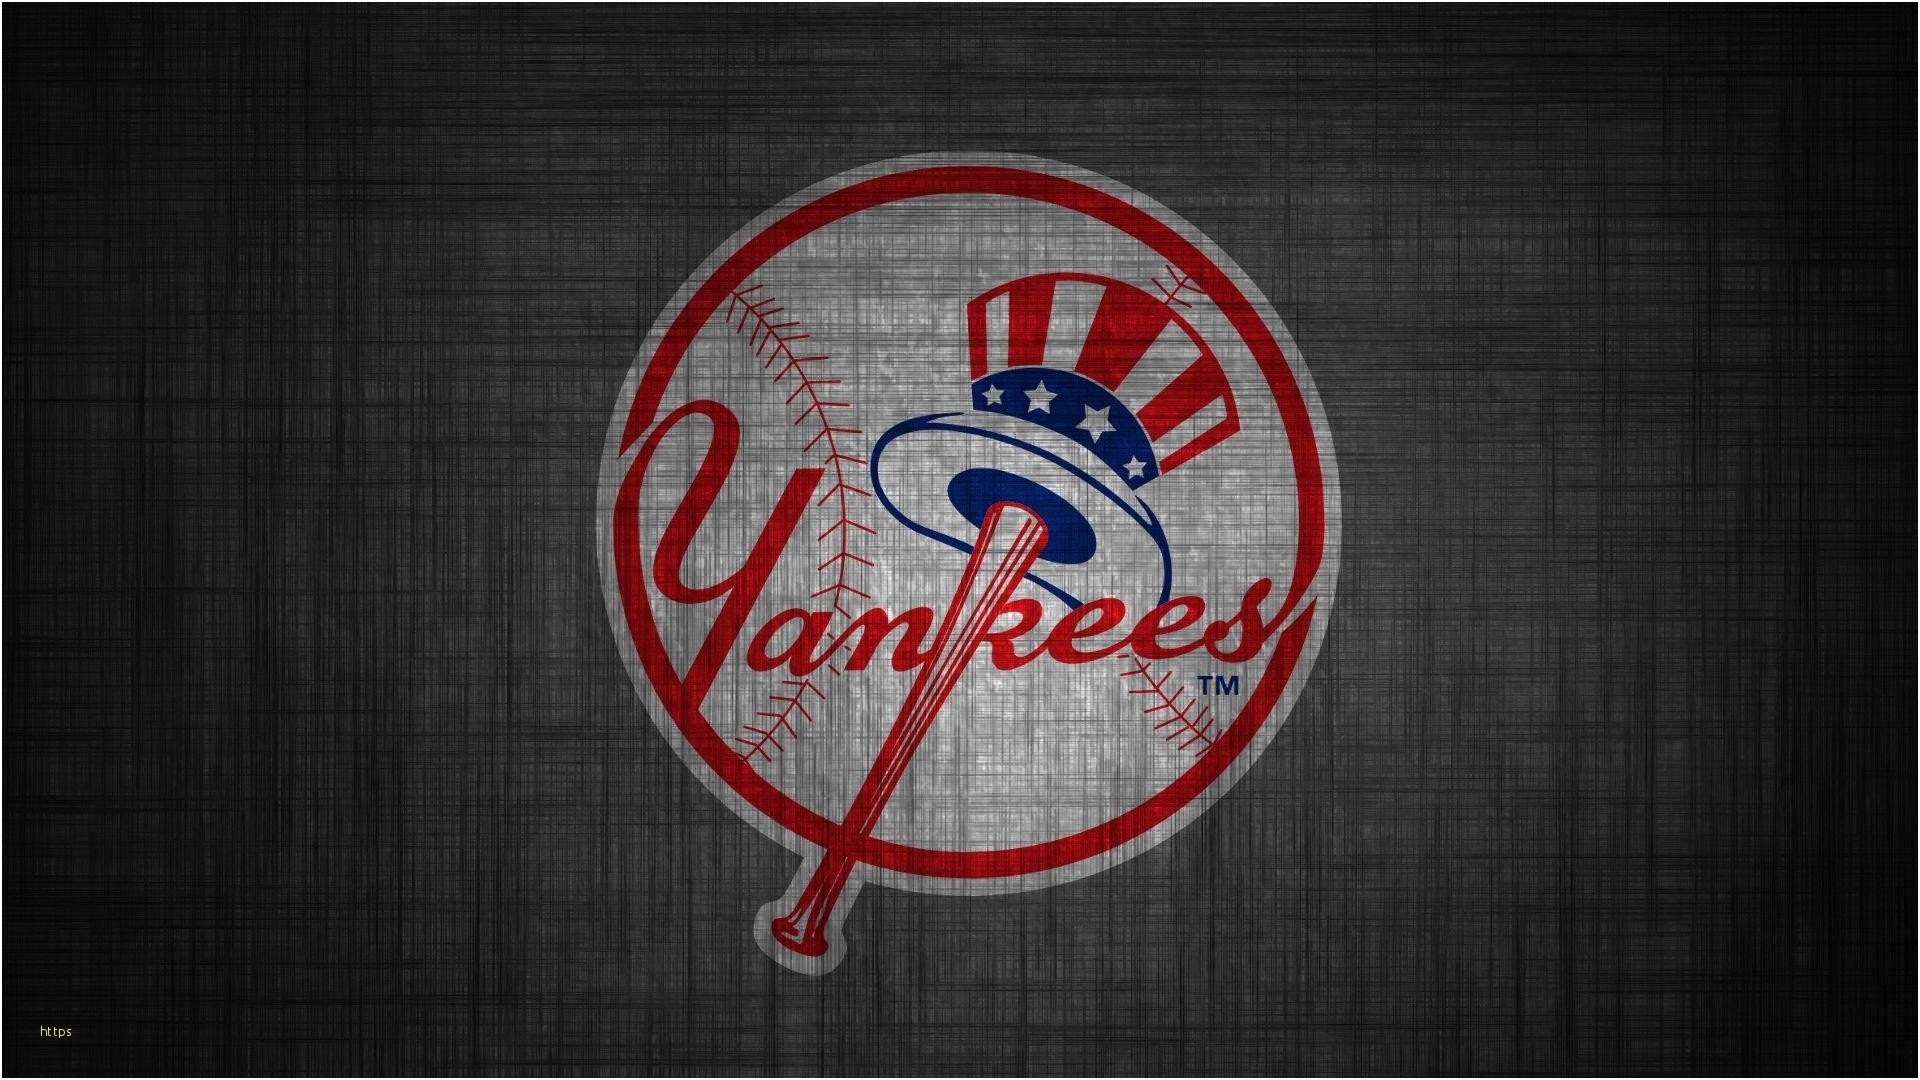 1920x1080 ... Ny Mets Wallpaper Lovely New York Yankees Wallpaper Desktop 61 Images  ...